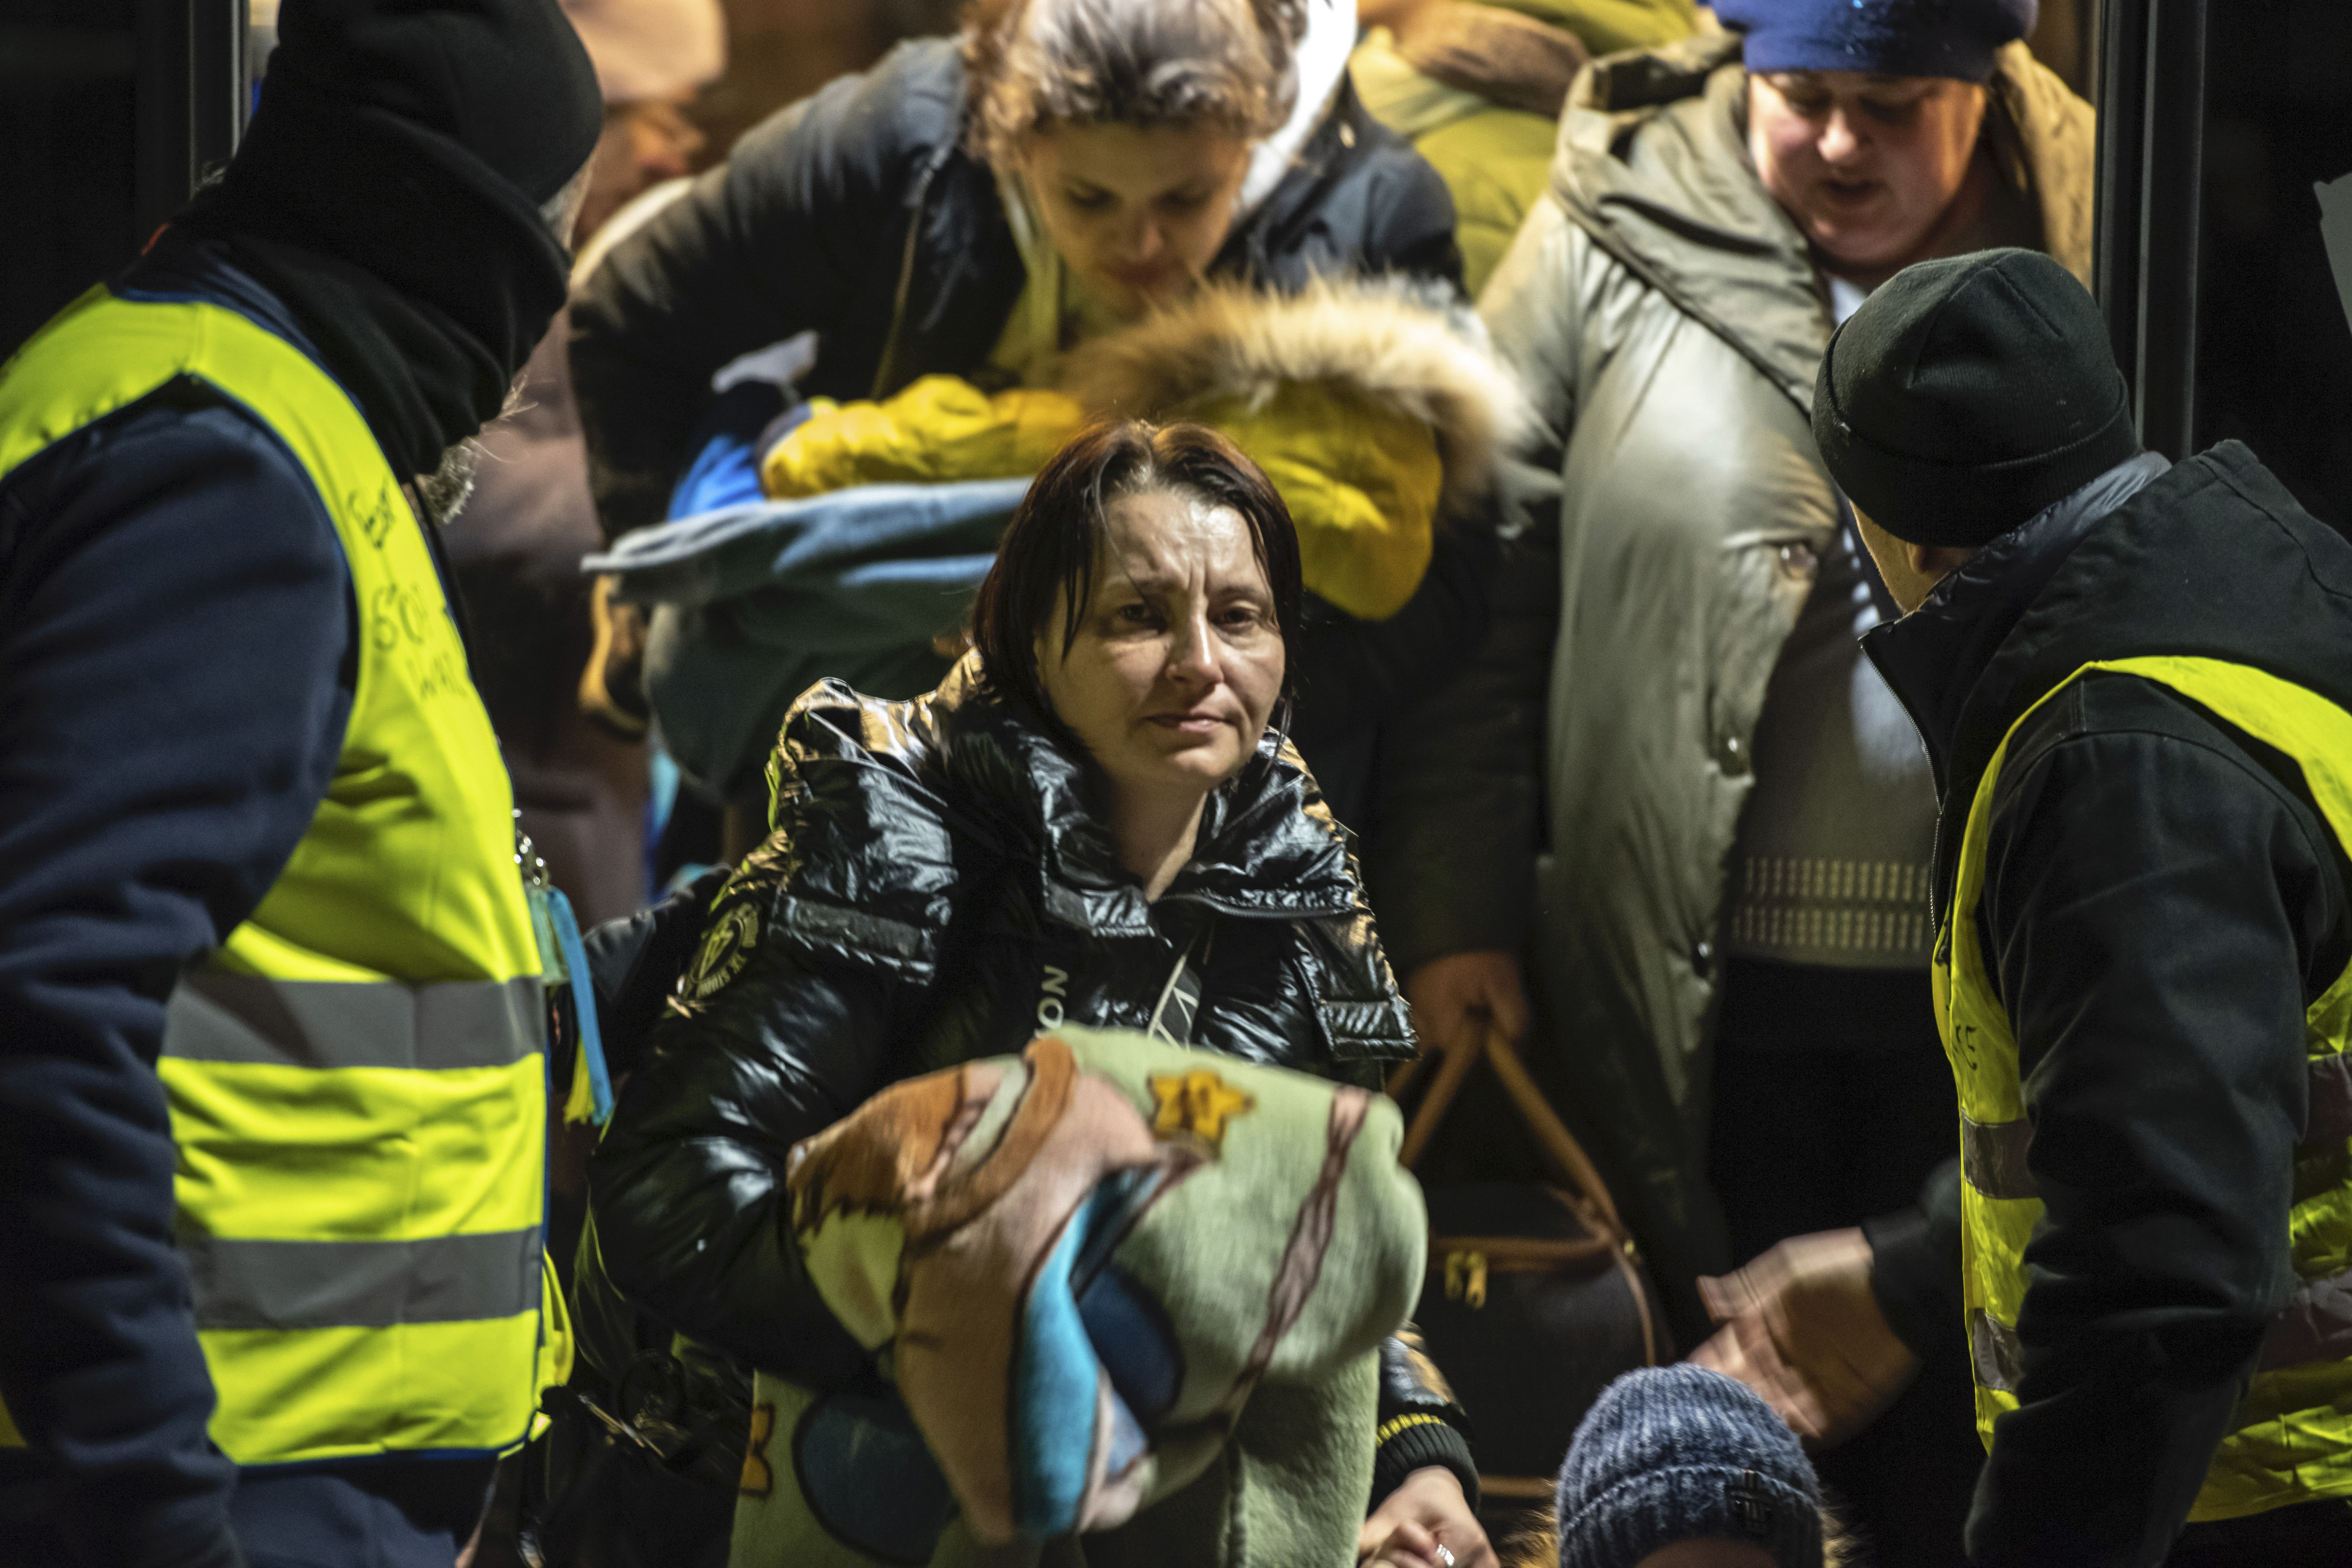 Las necesidades humanitarias son cada vez más urgentes en el este de Ucrania, advirtió la ONU